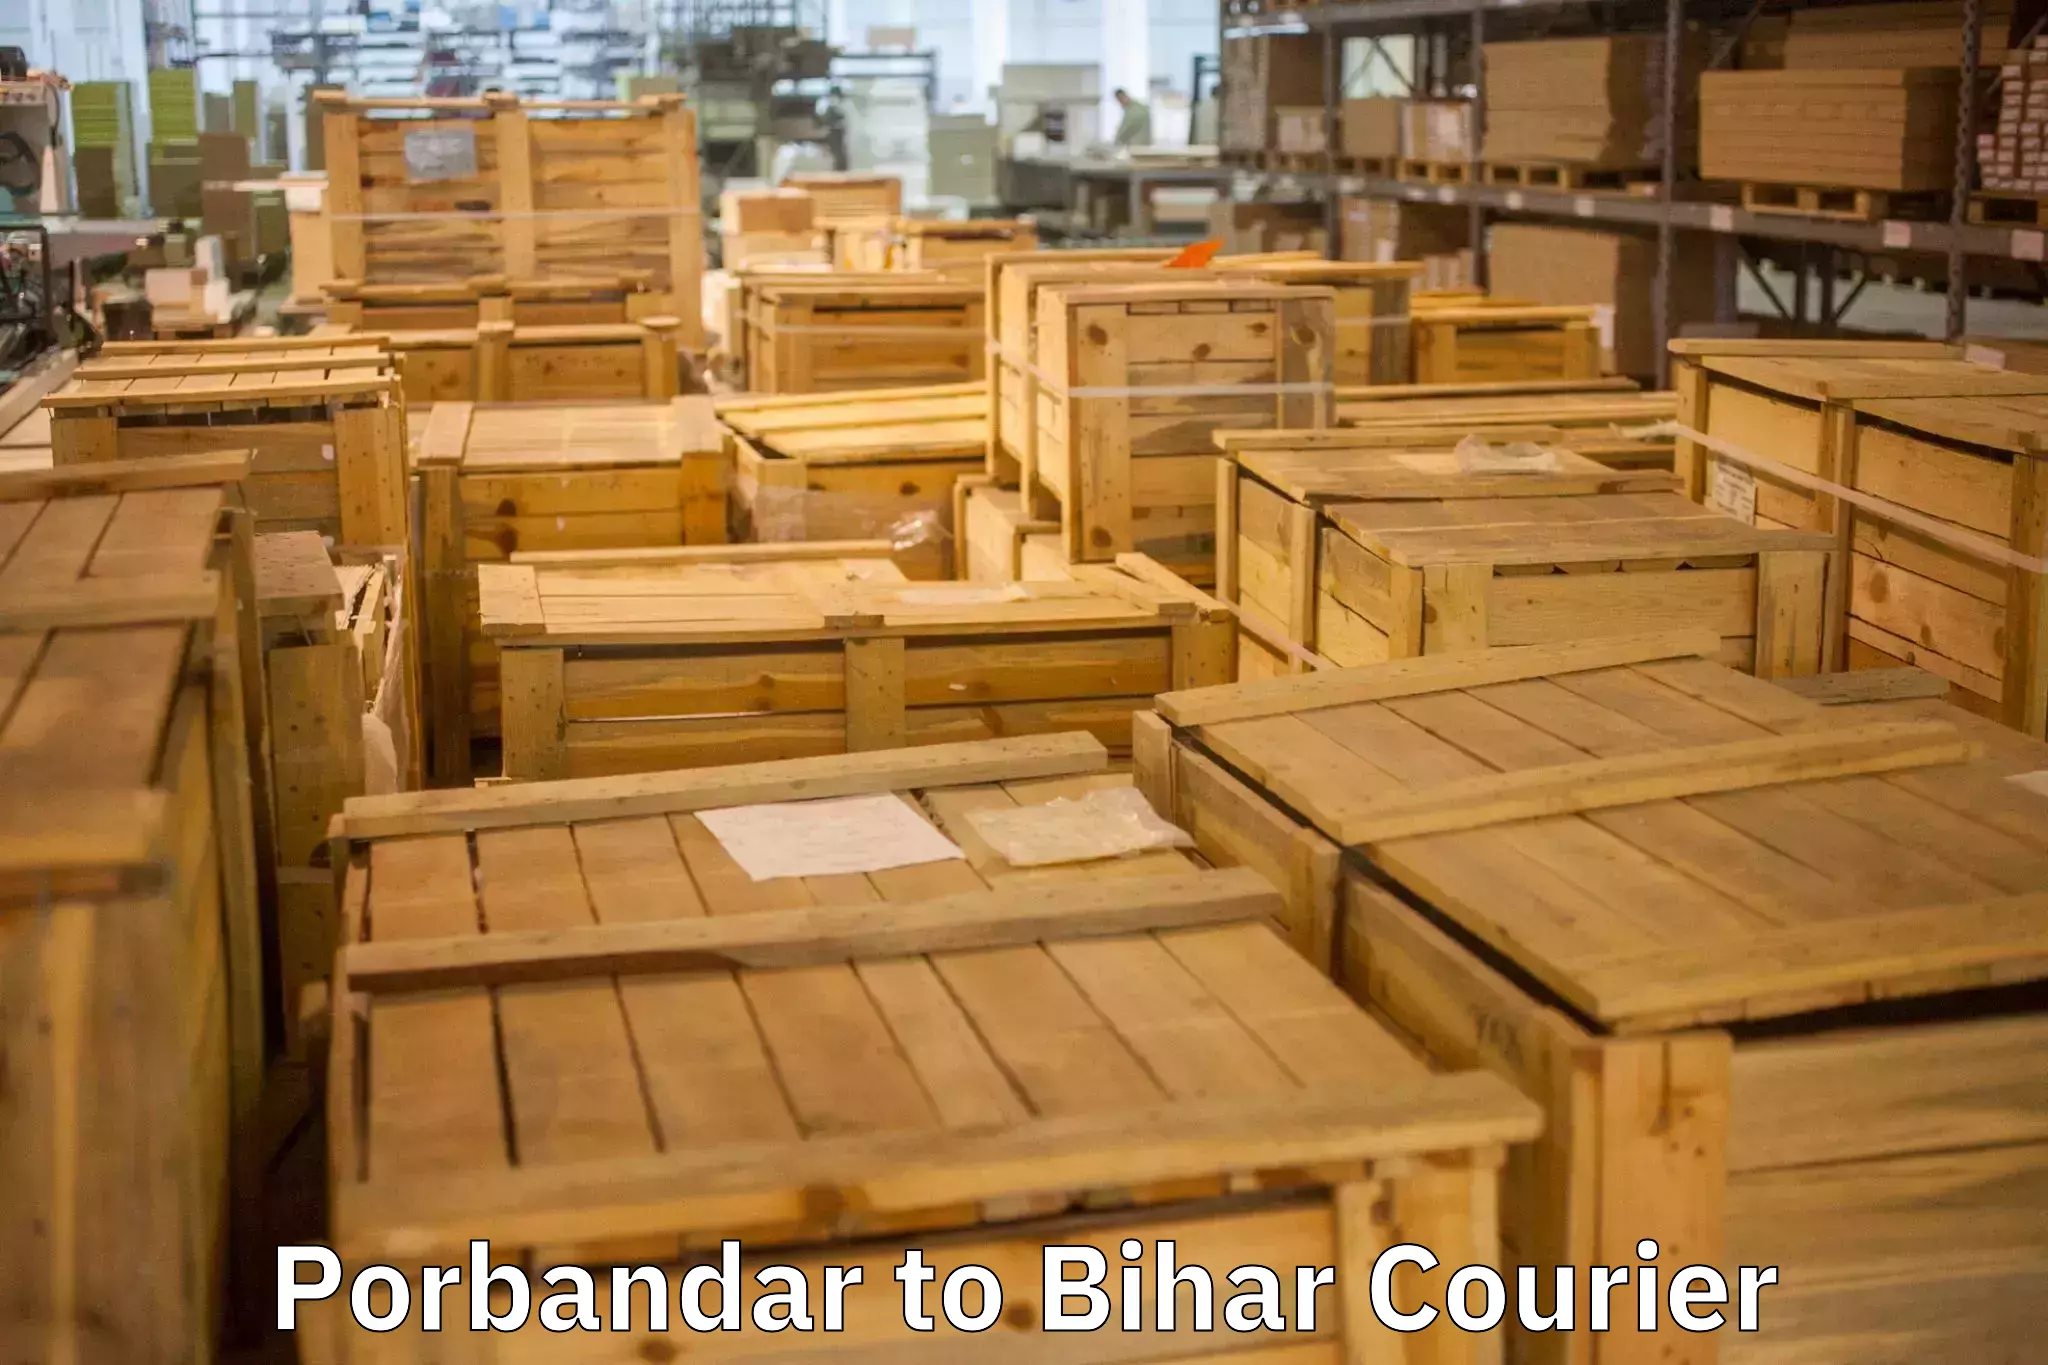 Home relocation experts Porbandar to Bhorey